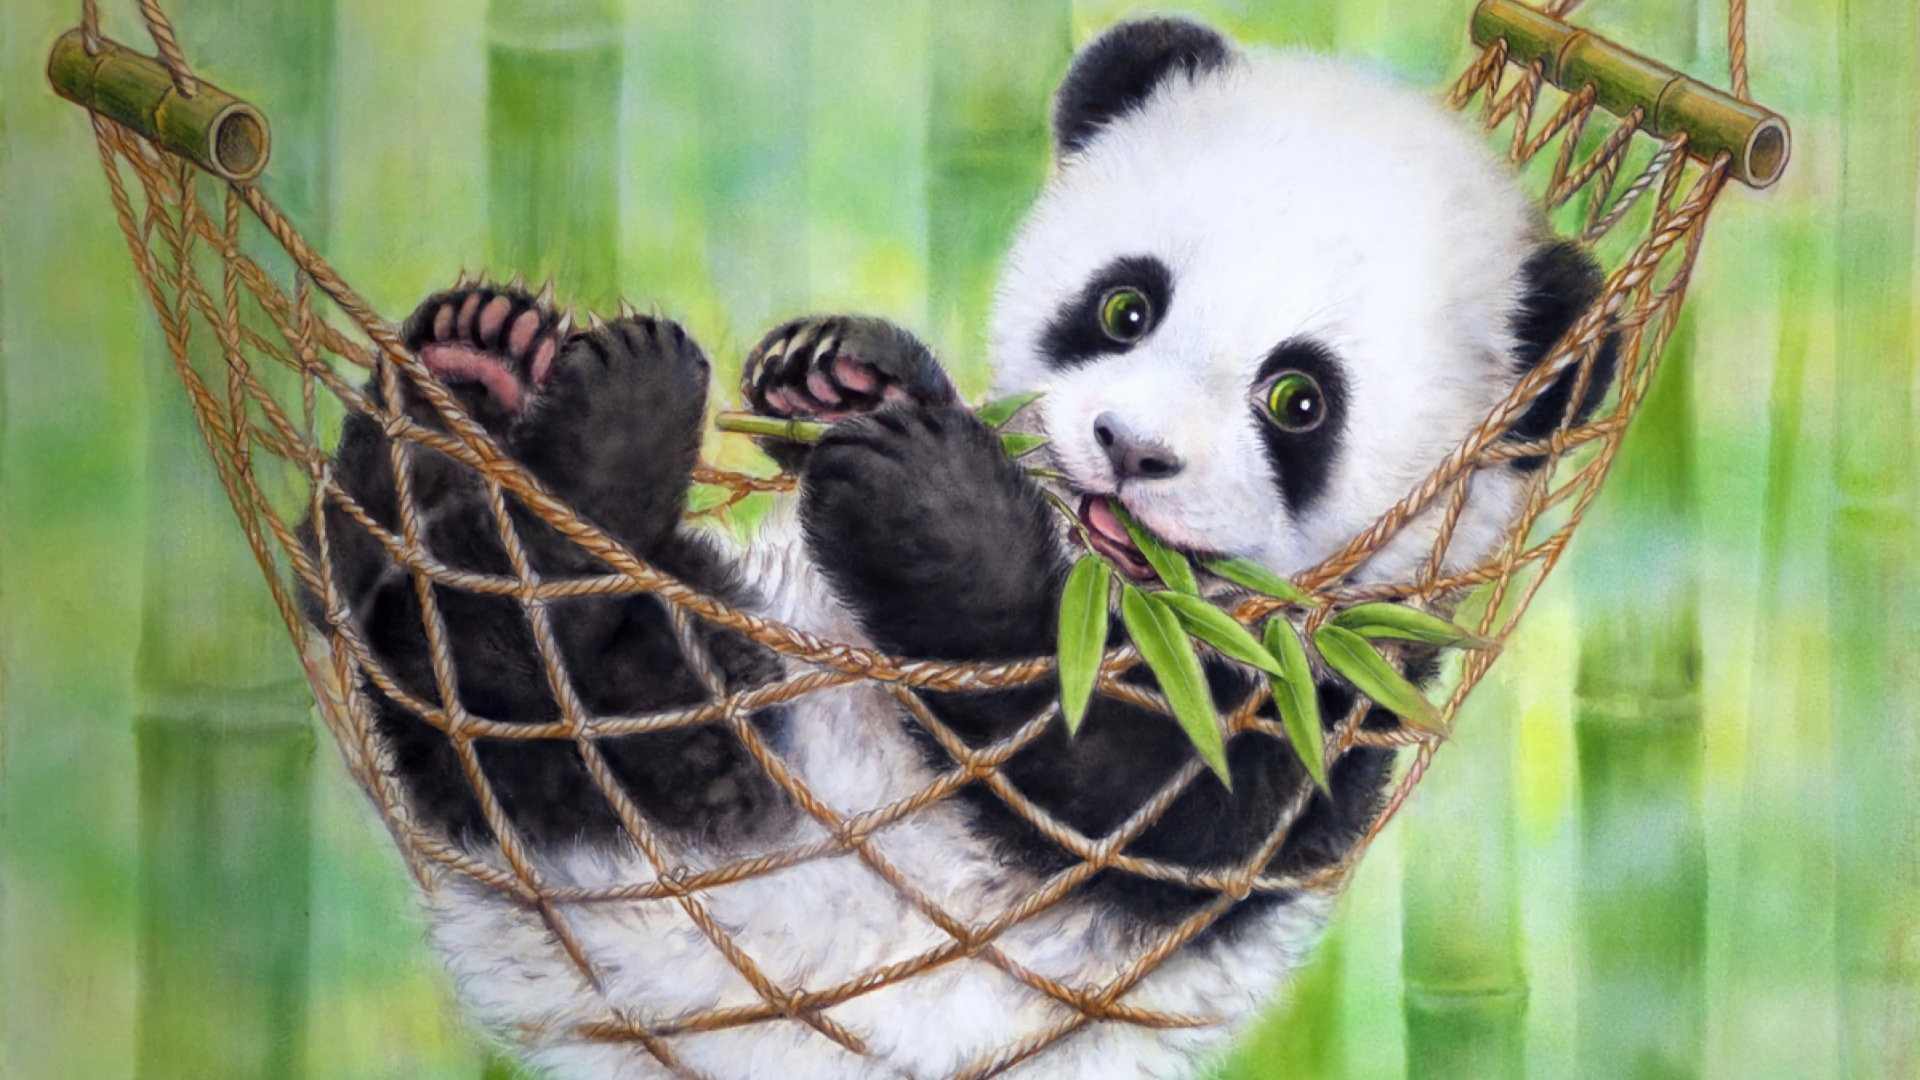 Cute Baby Panda Wallpapers - Wallpaper Cave